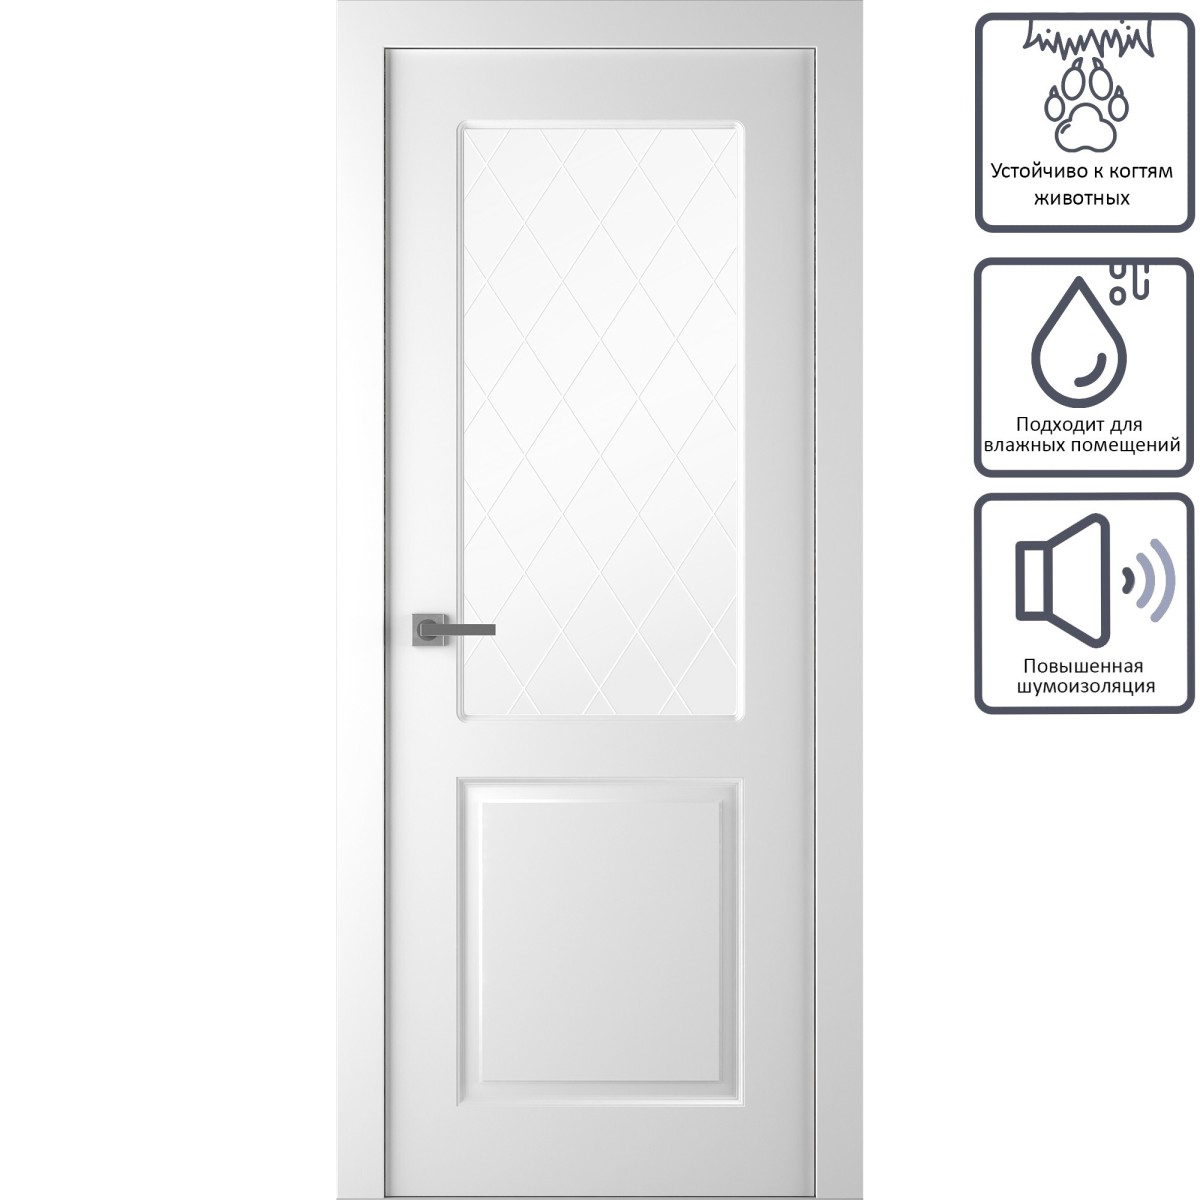 Дверь межкомнатная остеклённая Австралия, 200x80 см, эмаль, цвет белый, с фурнитурой